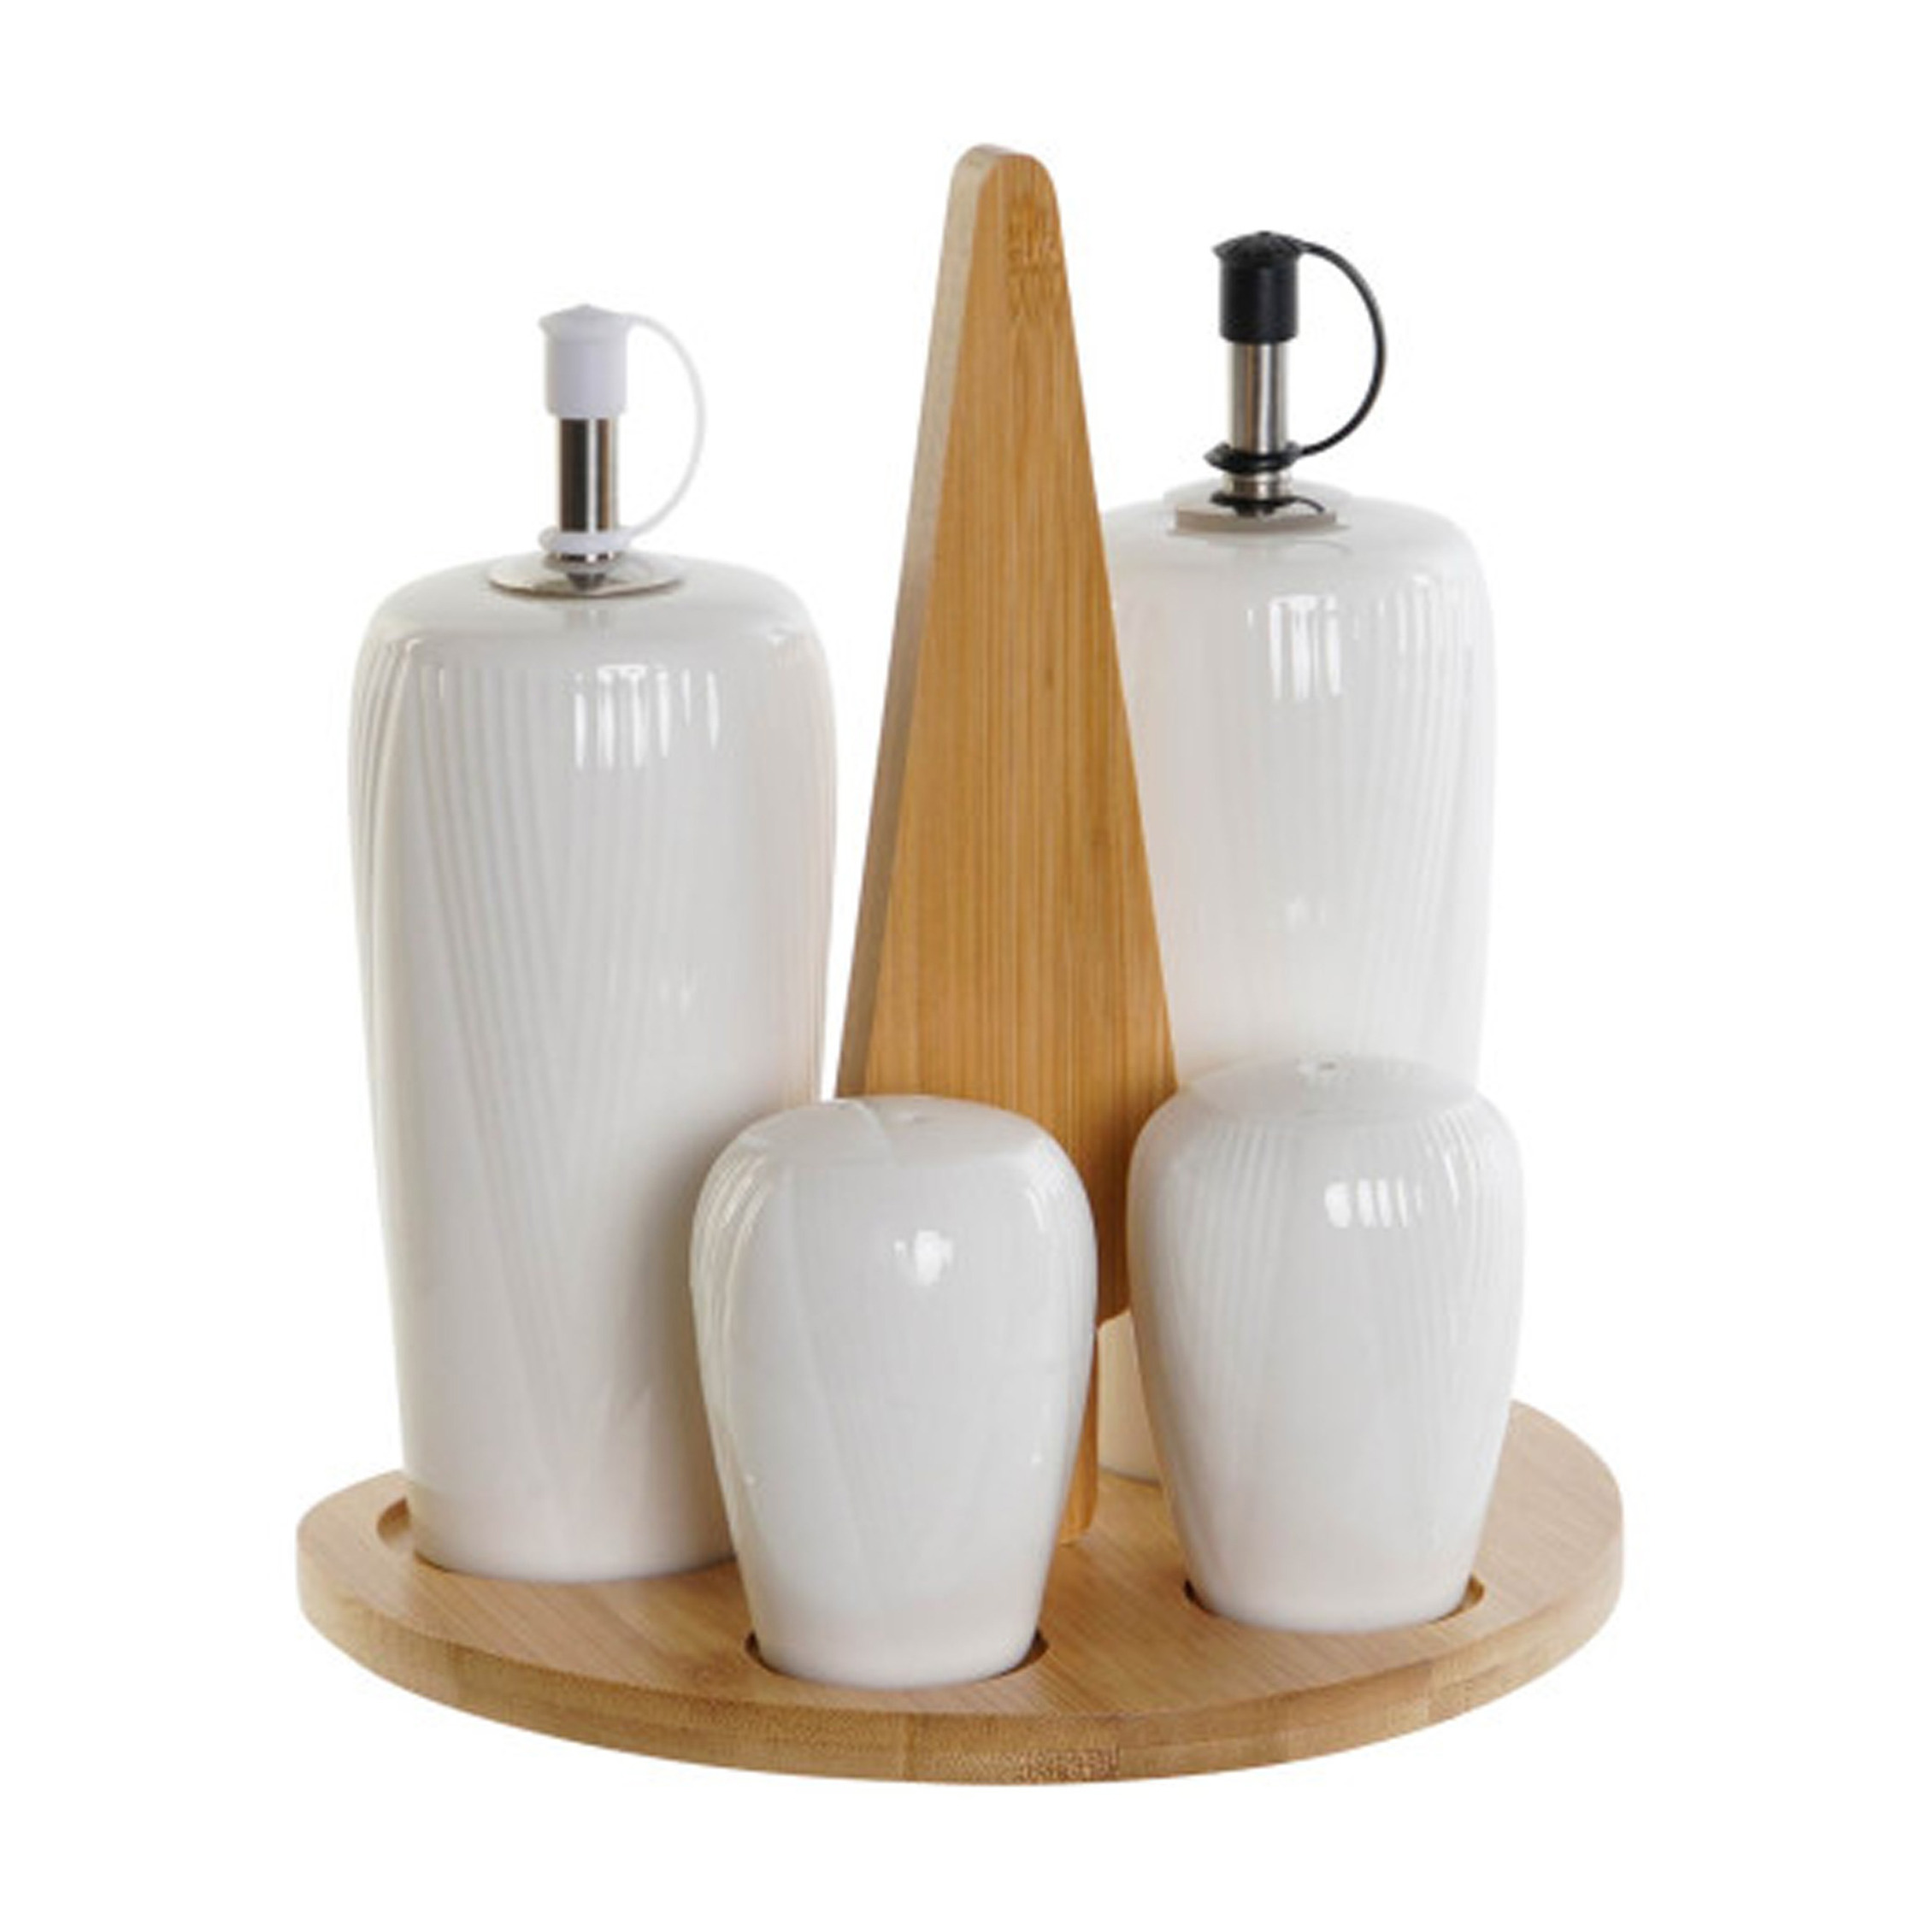 Items Azijn-Olie flessen tafelset met peper-zout vaatjes porselein-bamboe wit